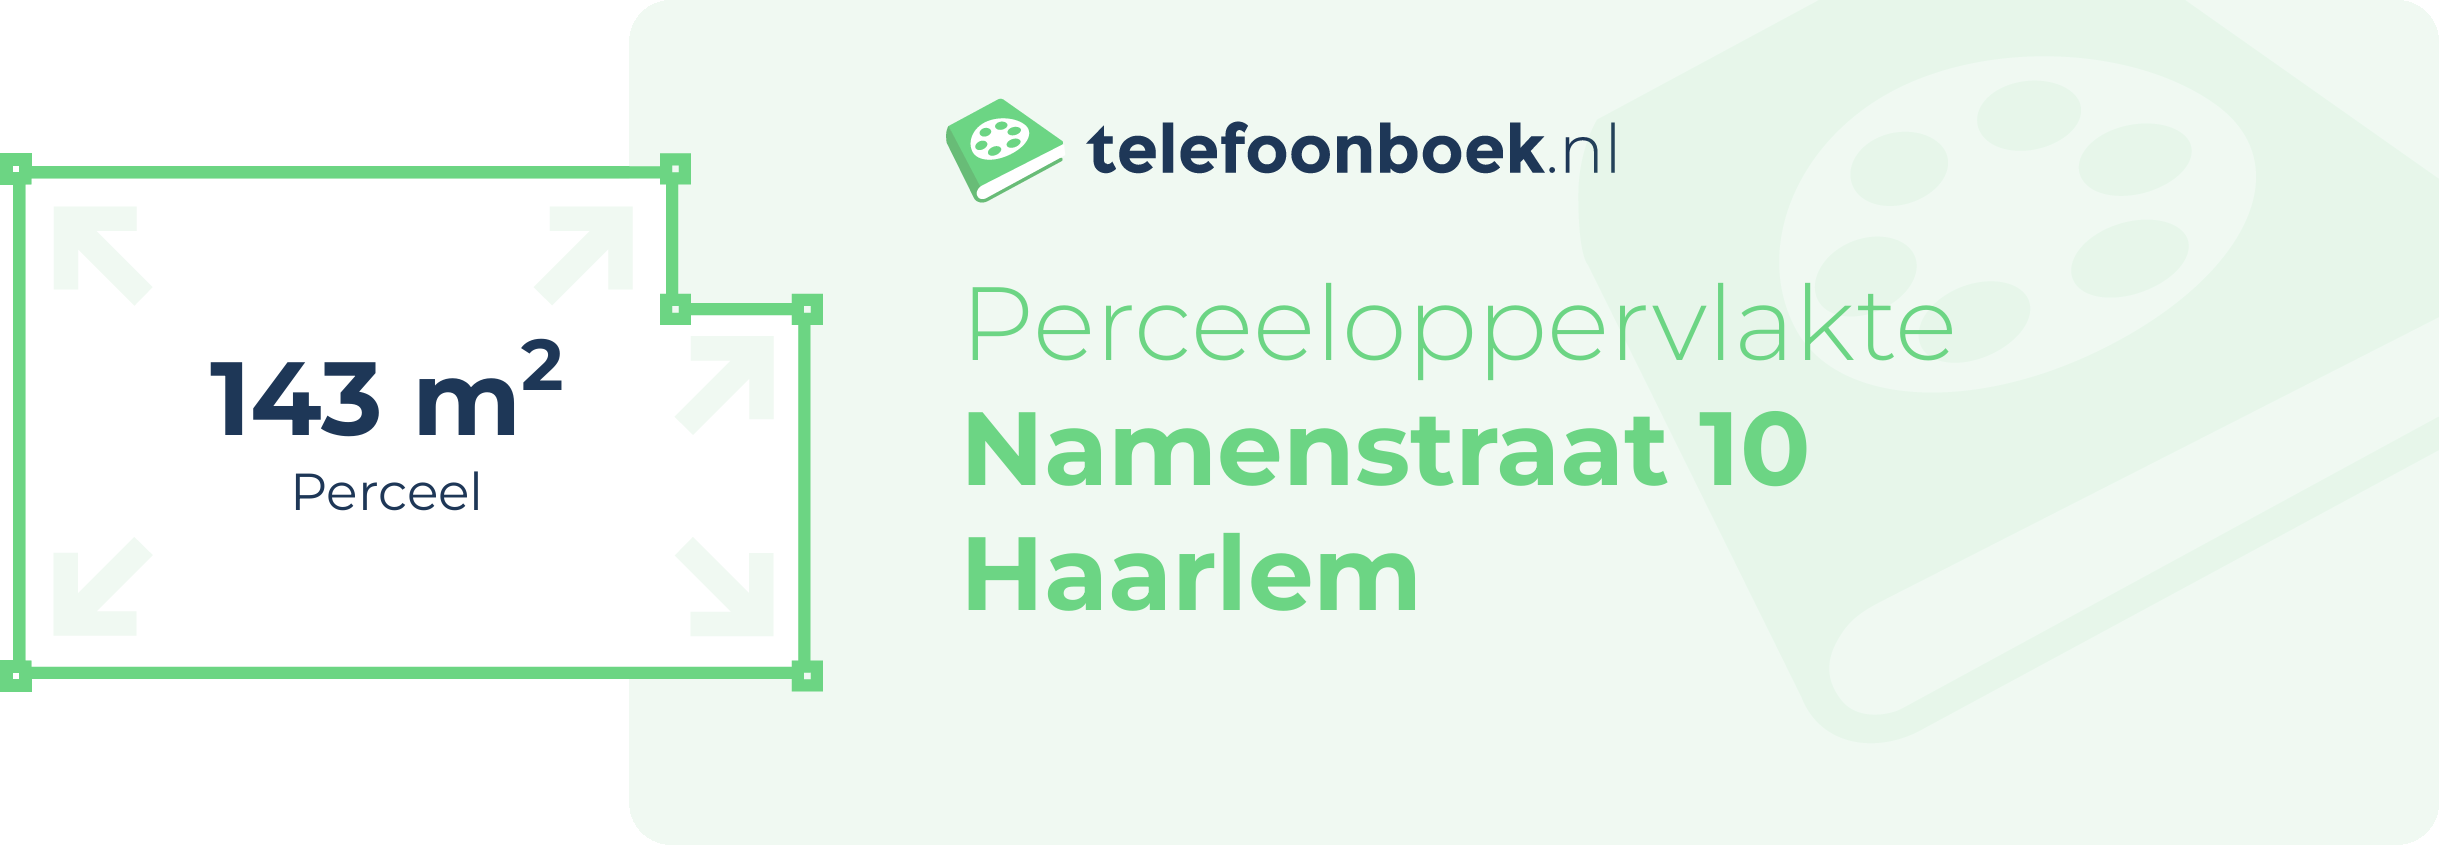 Perceeloppervlakte Namenstraat 10 Haarlem